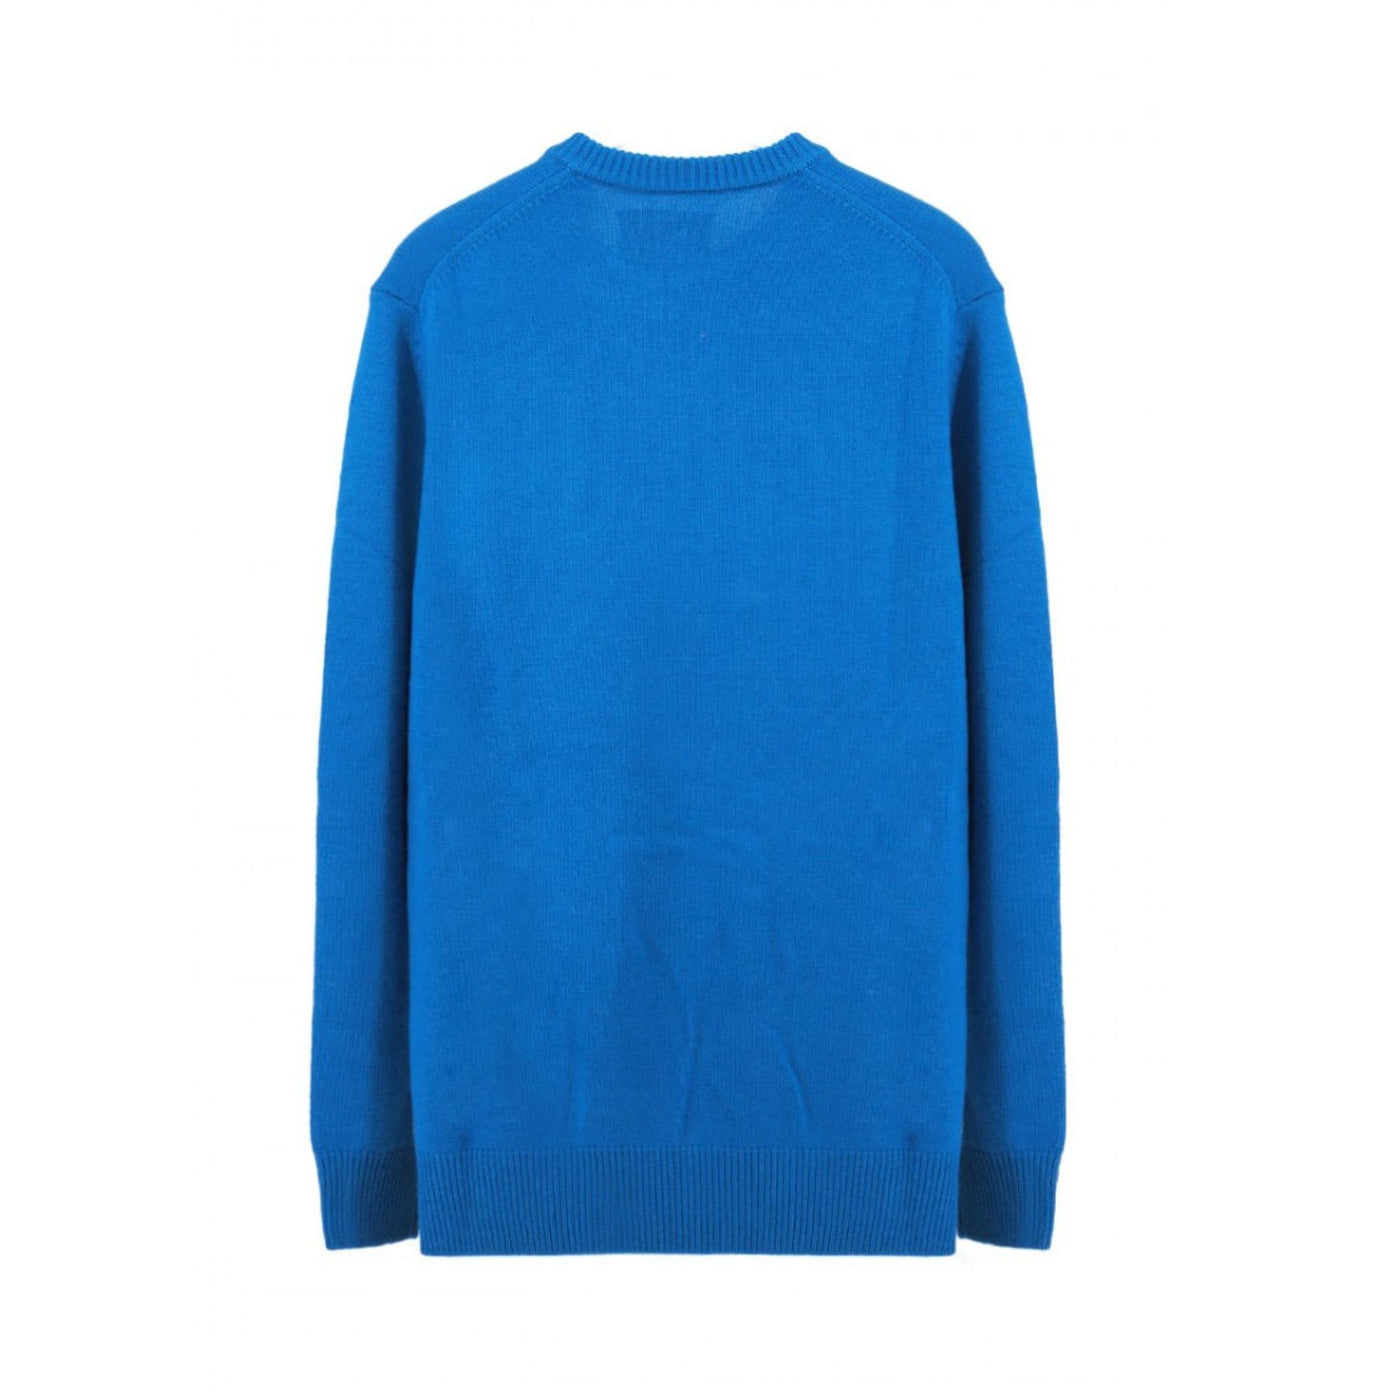 Maglione Uomo Blu Royal in misto lana con bordi a costine